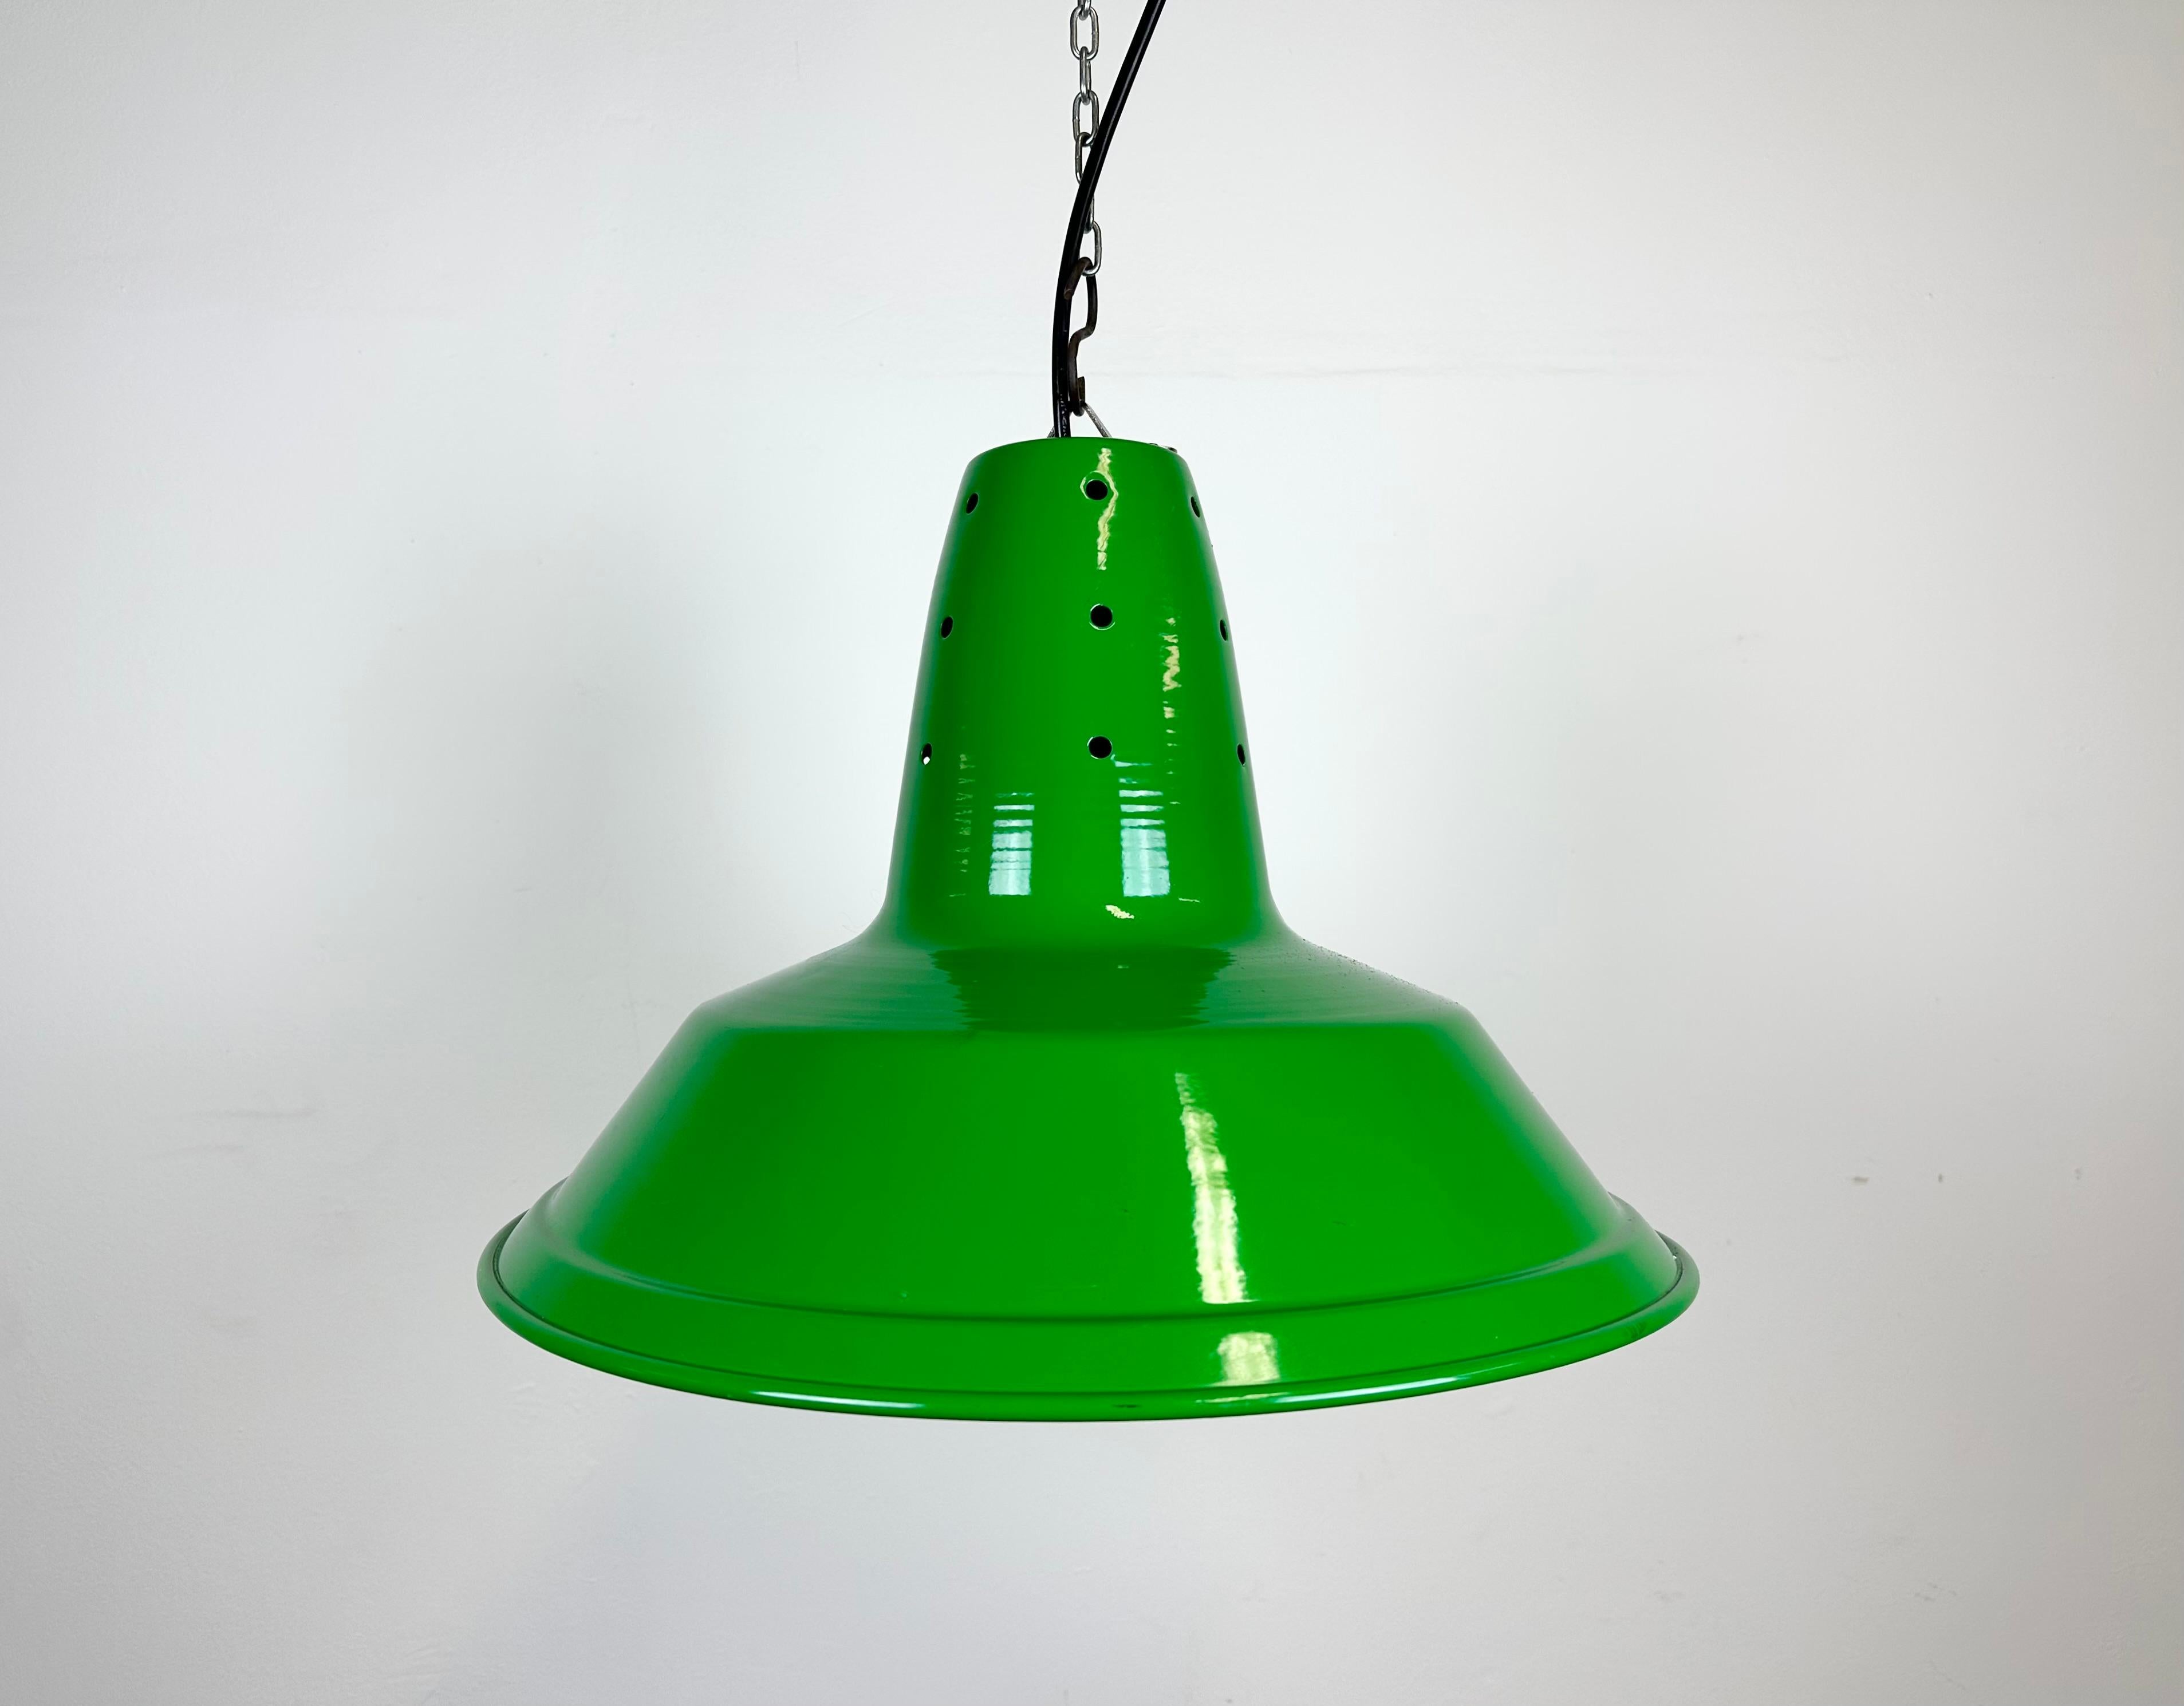 Industrielle, grün lackierte Pendelleuchte aus Eisen, hergestellt in Italien in den 1970er Jahren. Bügelverschluss. Die Fassung ist für Standard-Glühbirnen E 27/ E26 geeignet. Neues Kabel. Vollständig funktionsfähig. Das Gewicht der Lampe beträgt 1